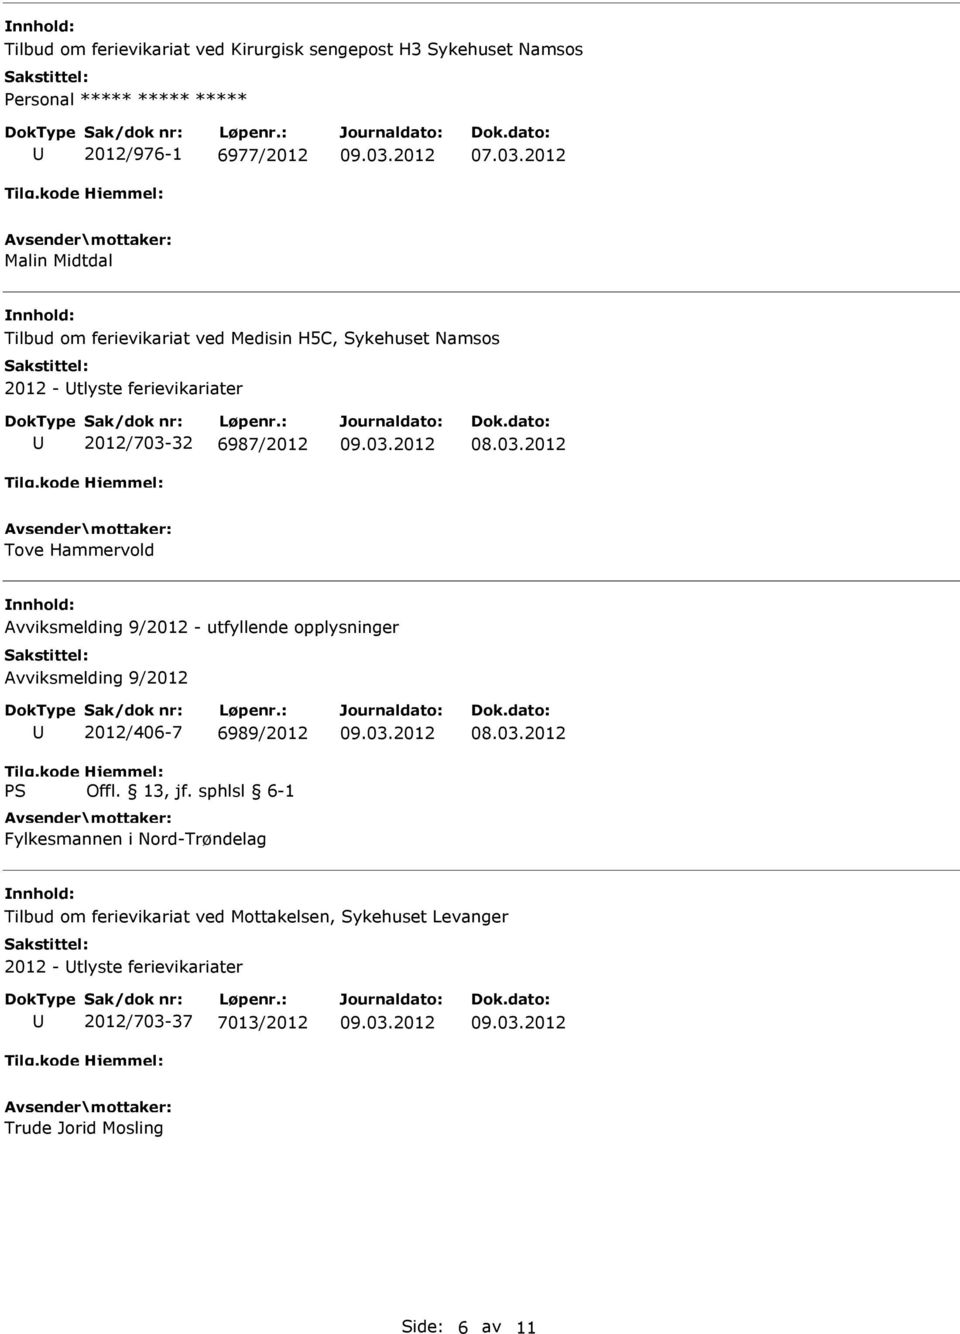 Avviksmelding 9/2012 - utfyllende opplysninger Avviksmelding 9/2012 2012/406-7 6989/2012 Fylkesmannen i Nord-Trøndelag